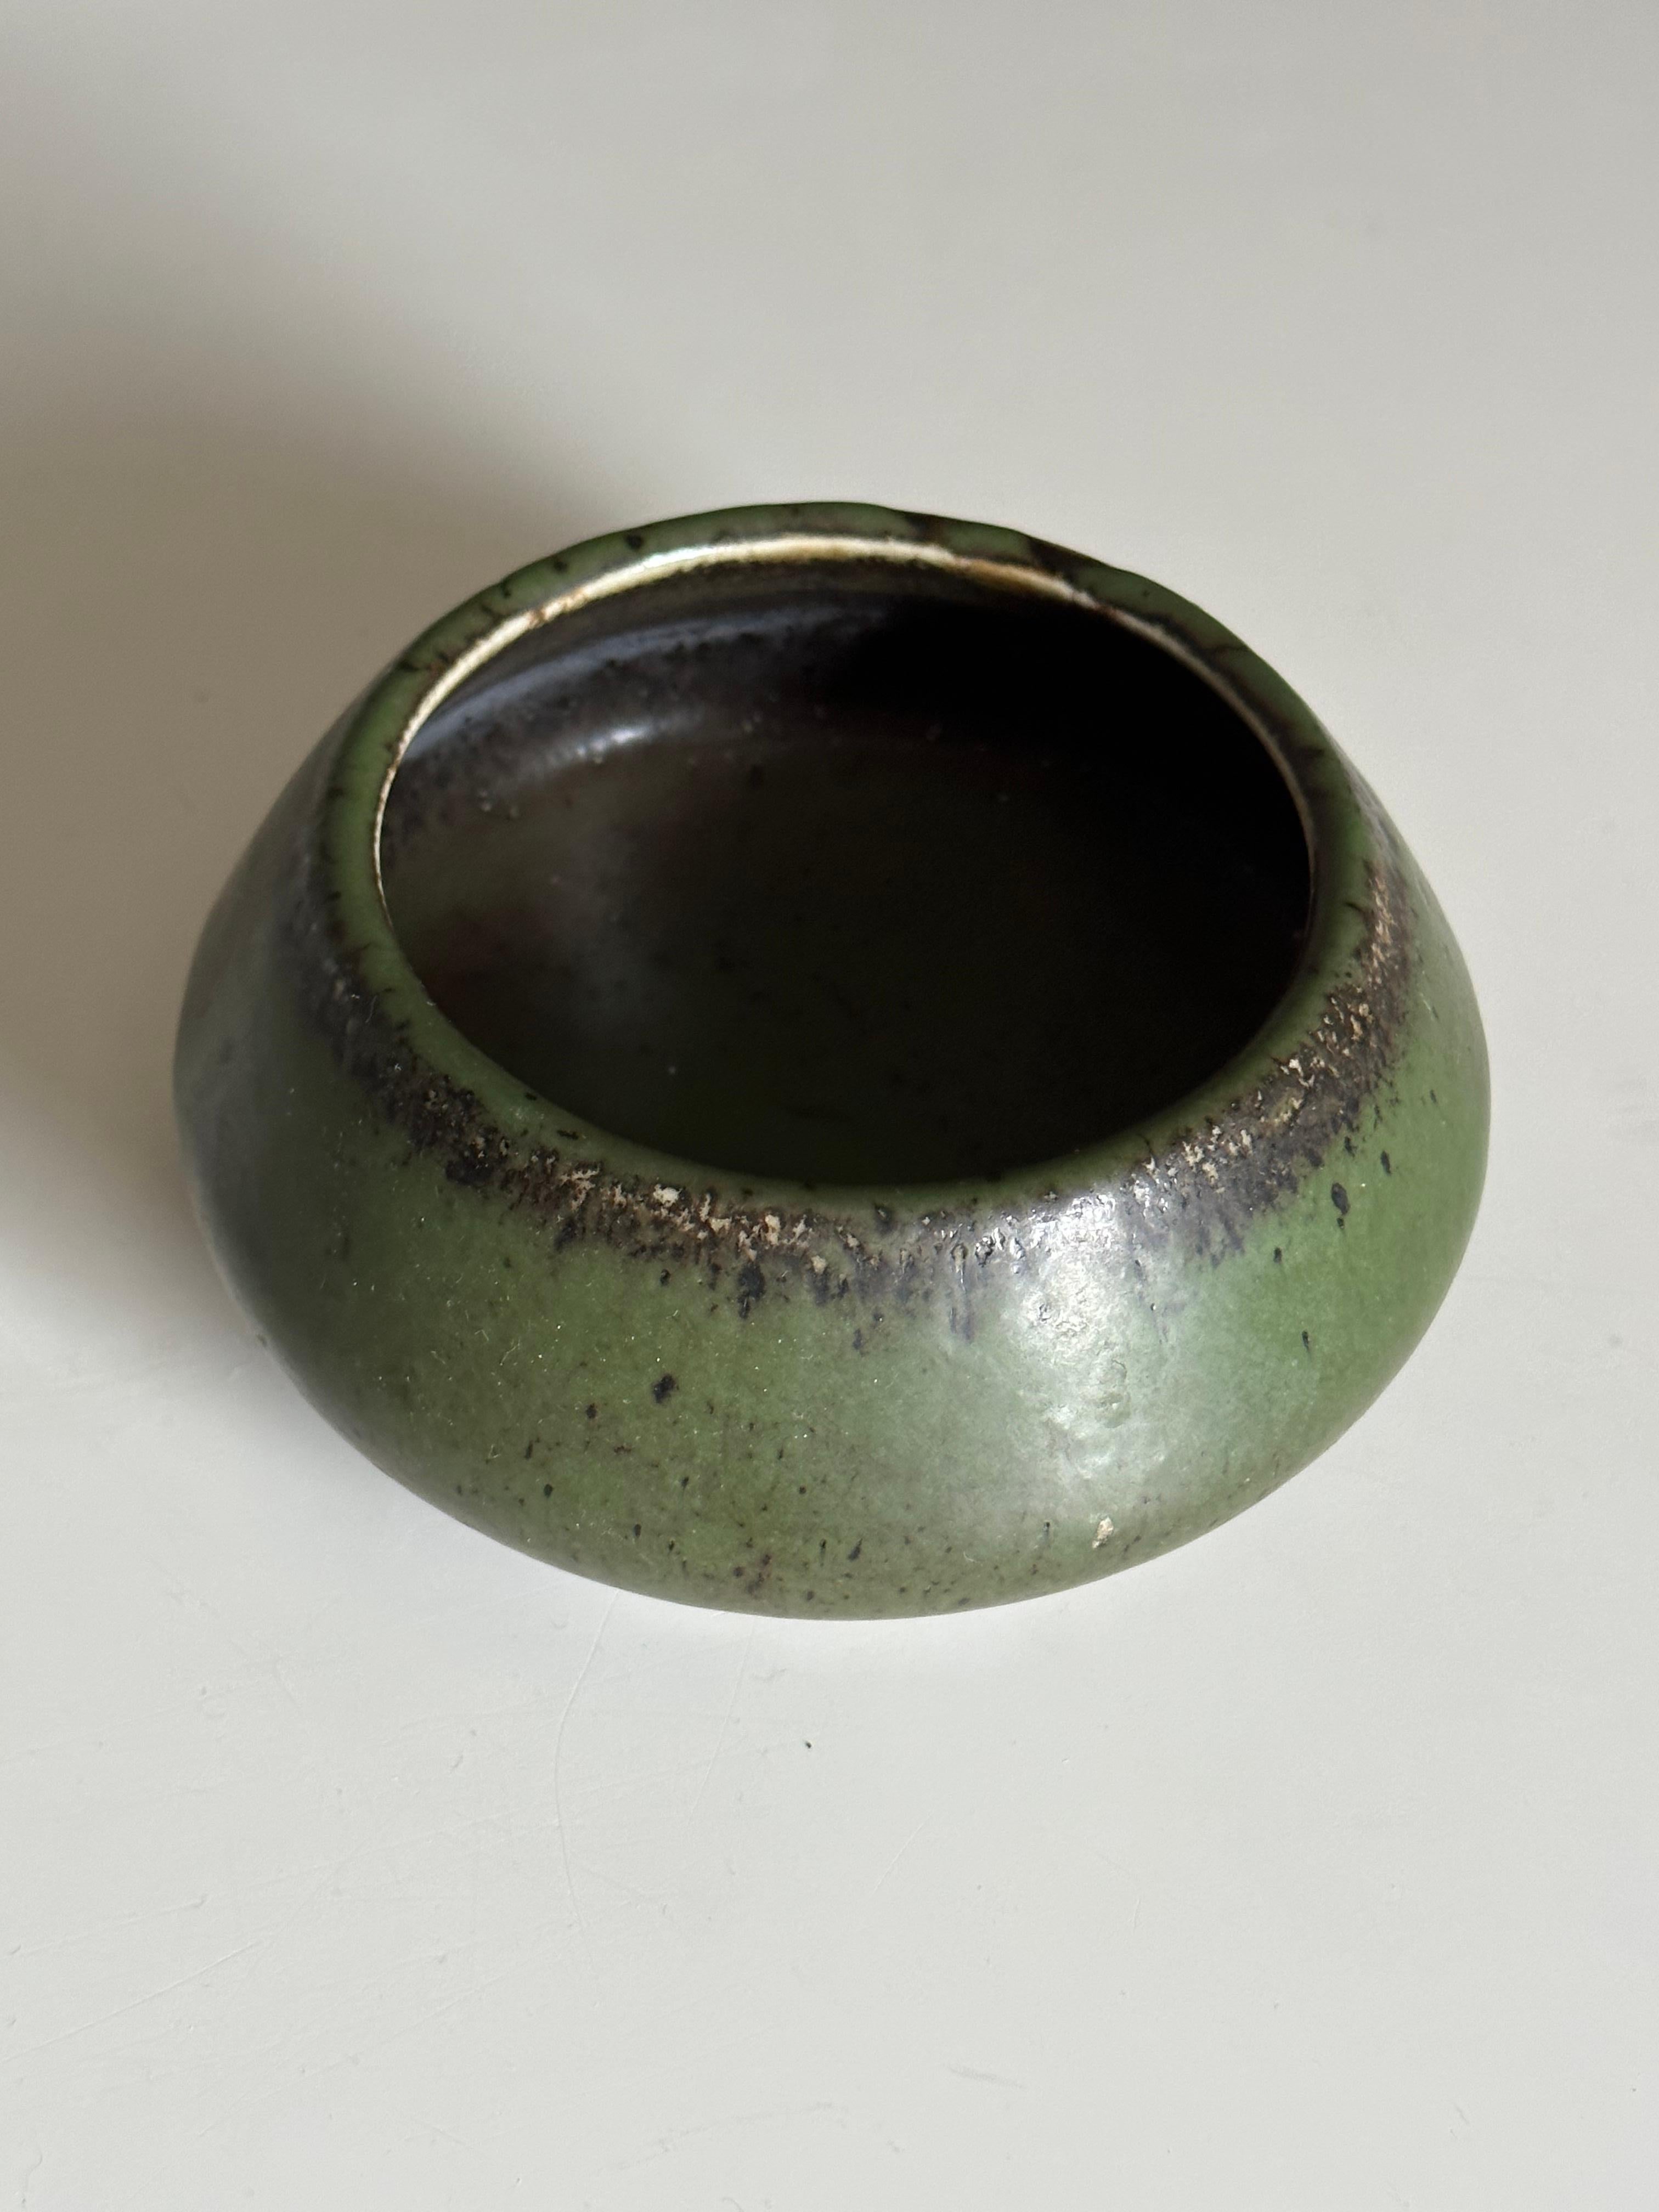 Stoneware Carl Harry Stålhane for Rörstrand Atelje Mottled Green Ceramic Bowl/ Low Vase For Sale